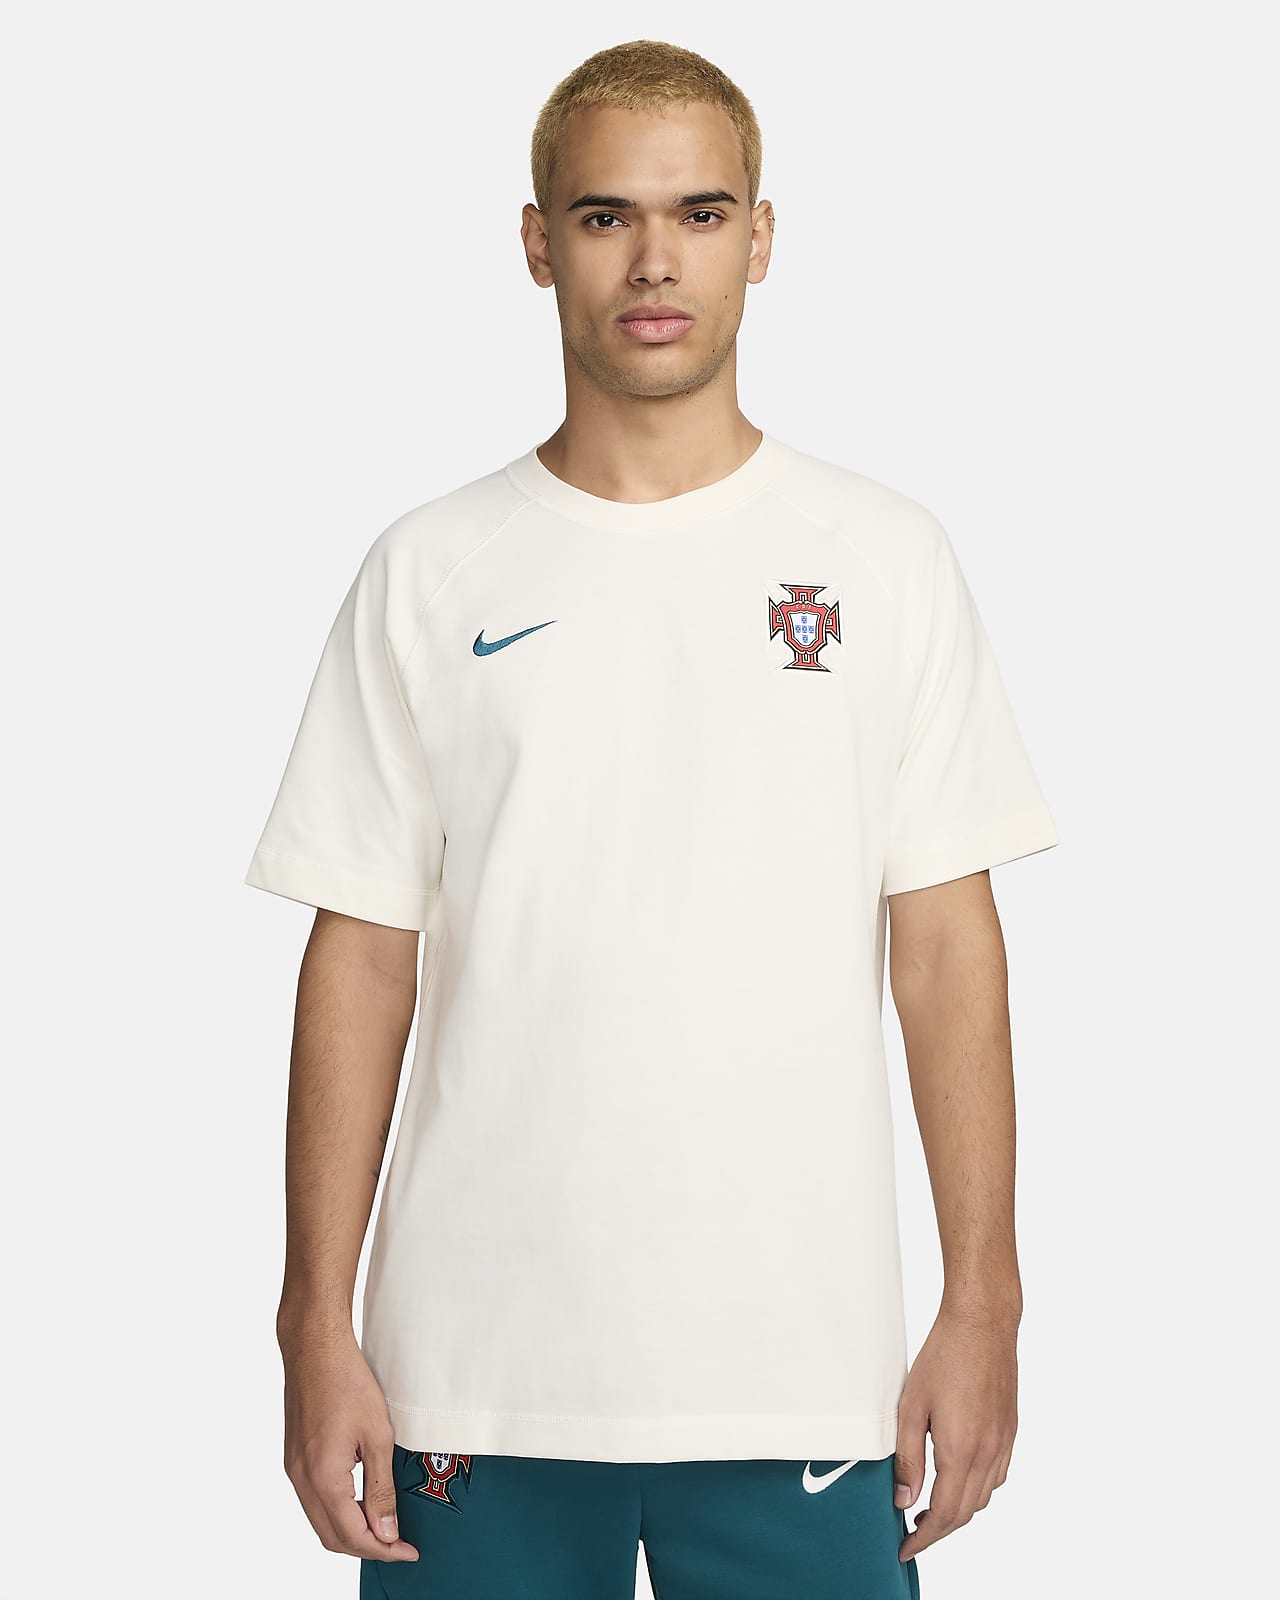 Portugália Travel Nike Soccer rövid ujjú felső